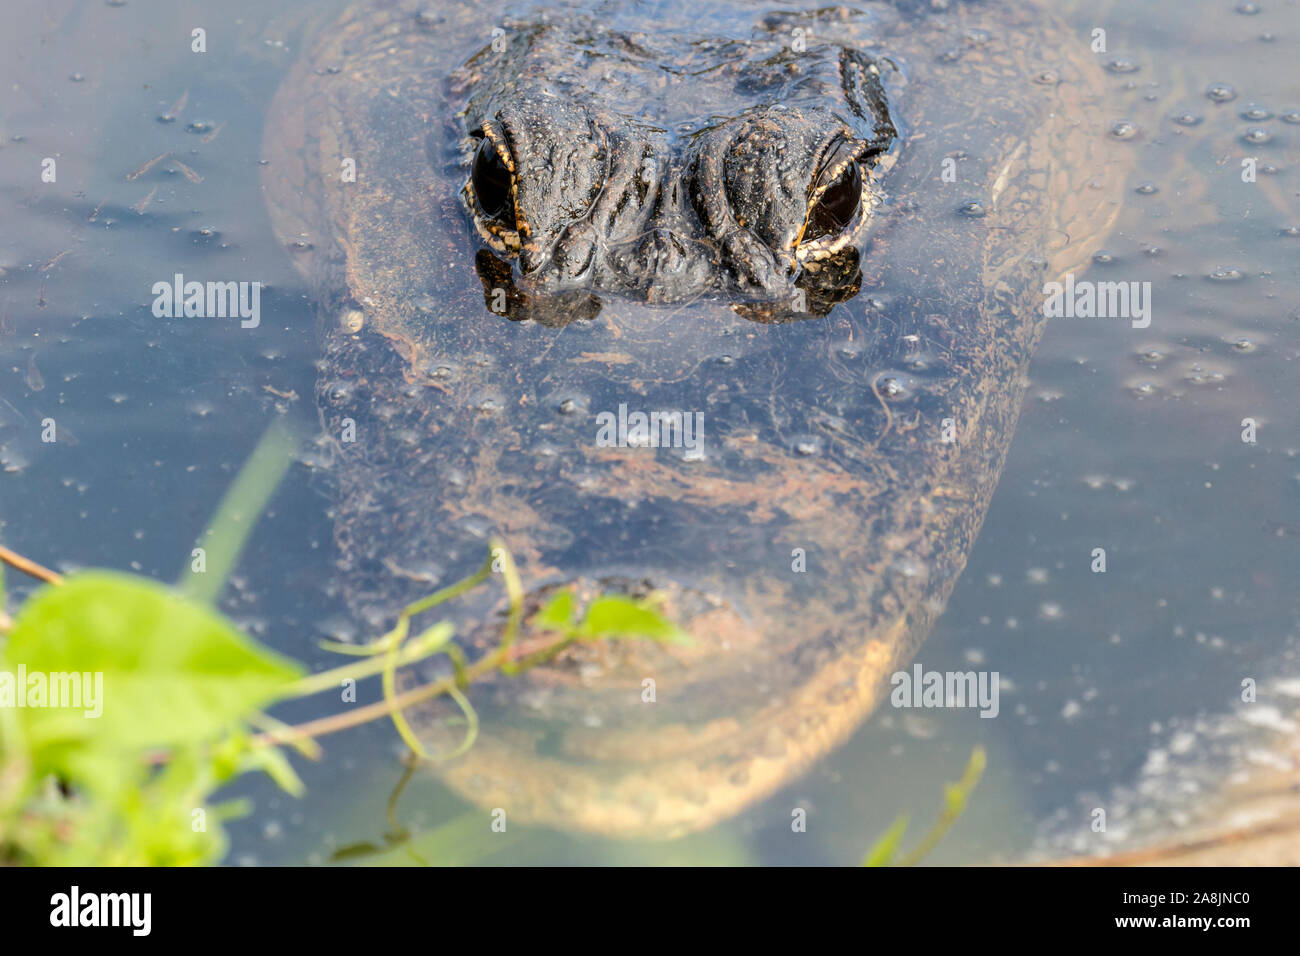 Un alligator sauvage natation dans les eaux du parc national des Everglades (Floride). Banque D'Images